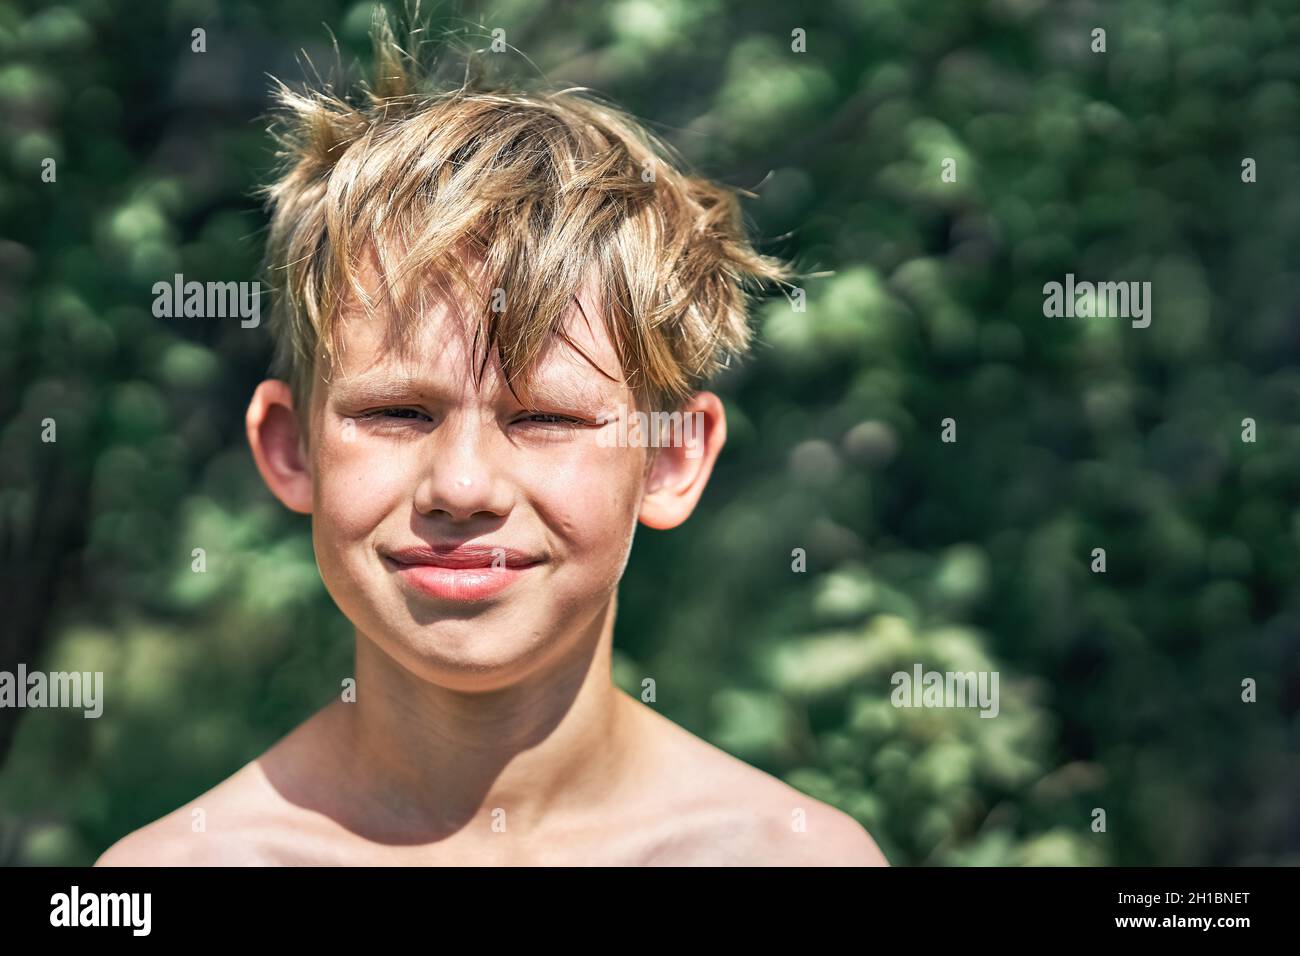 Jeune garçon d'école souriant, avec des cheveux rugueux blonds, postés pour un appareil photo dans un parc vert lors d'une belle journée d'été Banque D'Images